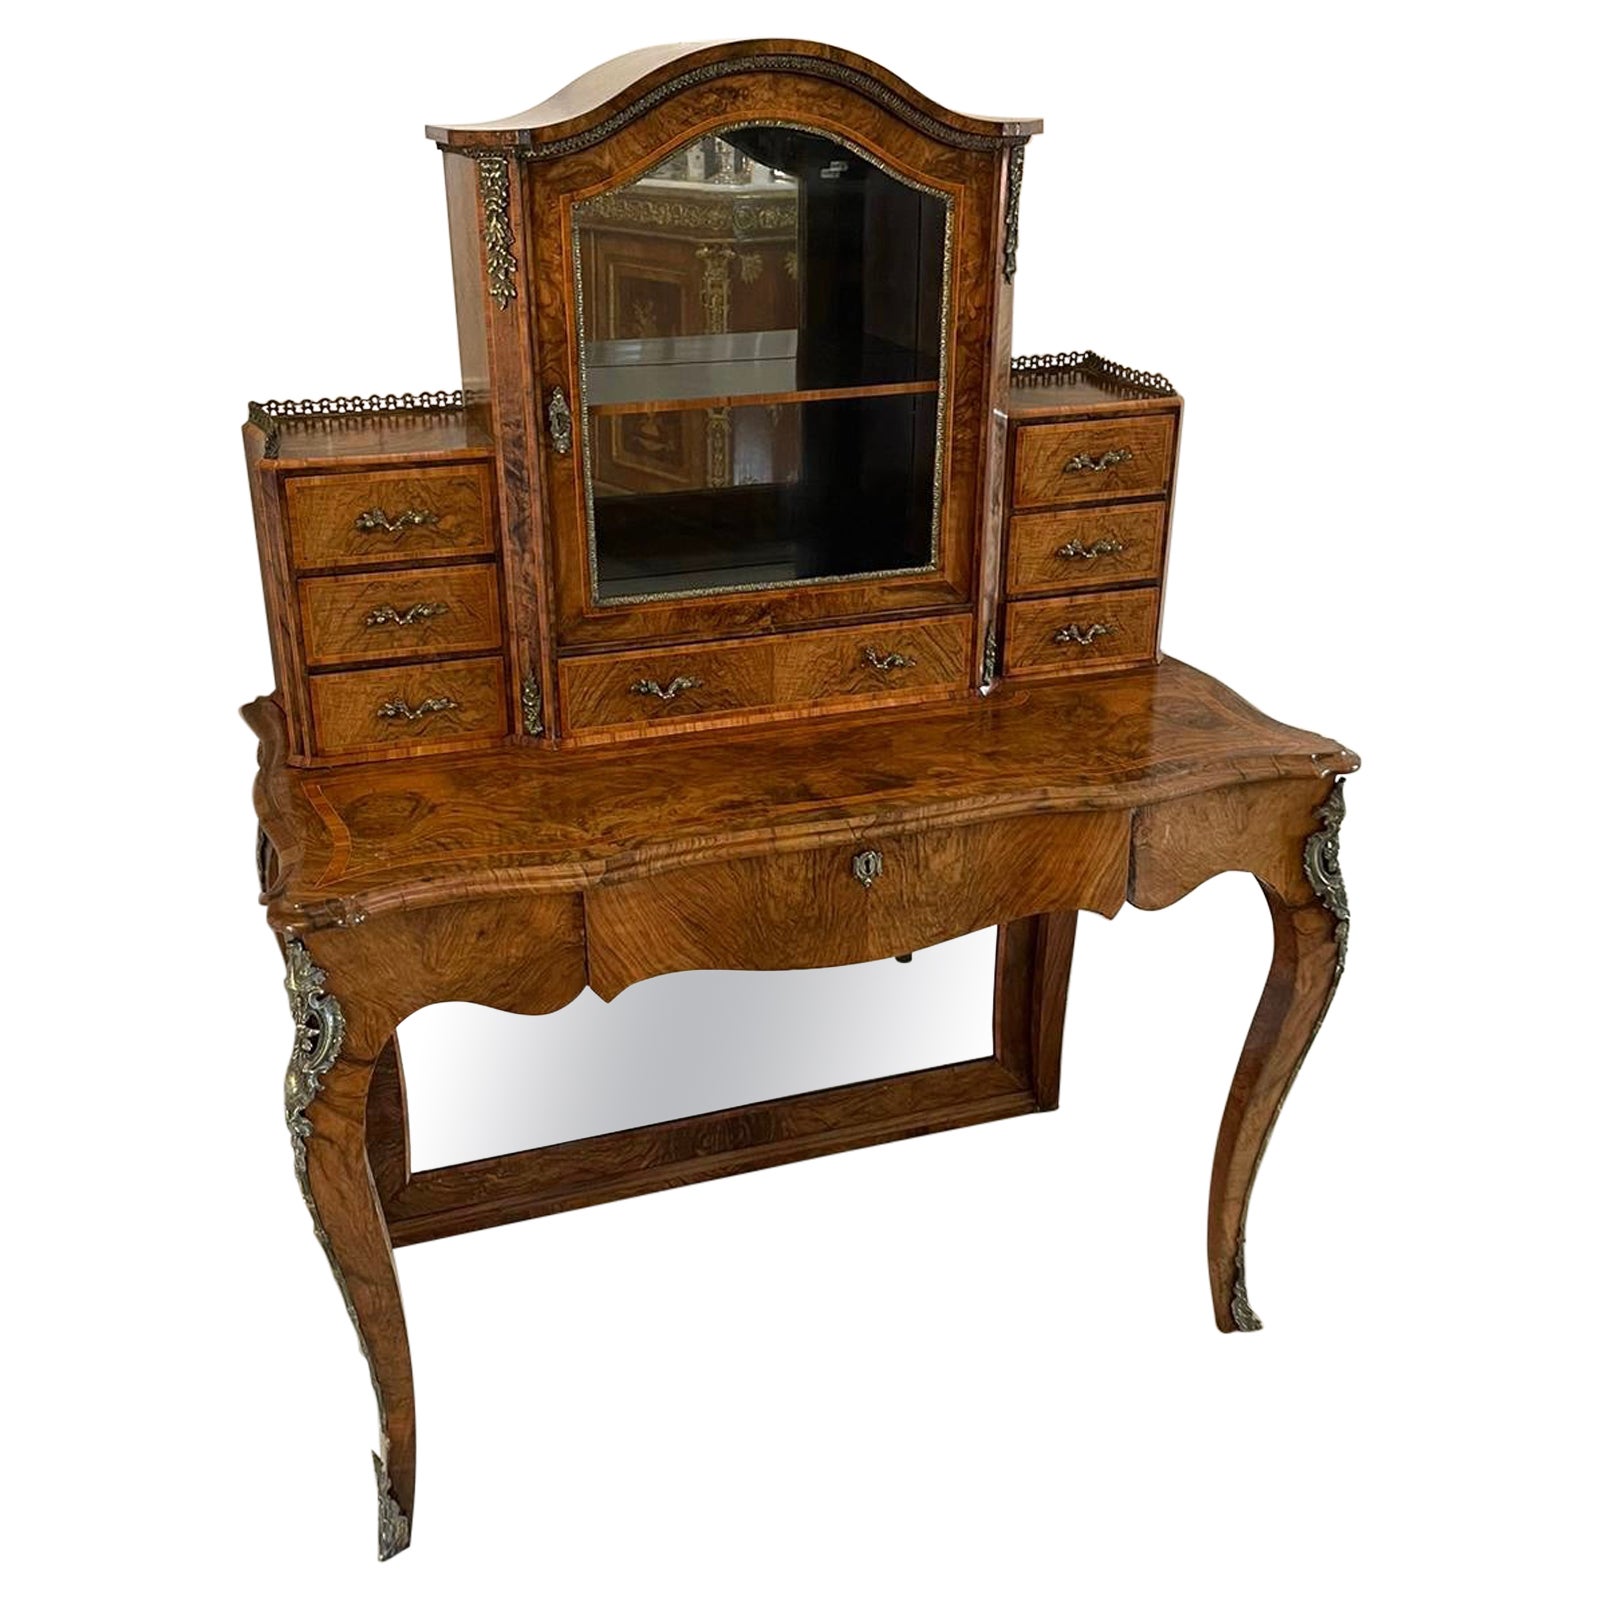 Outstanding Quality Antique Victorian Burr Walnut Bonheur De Jour Writing Desk For Sale